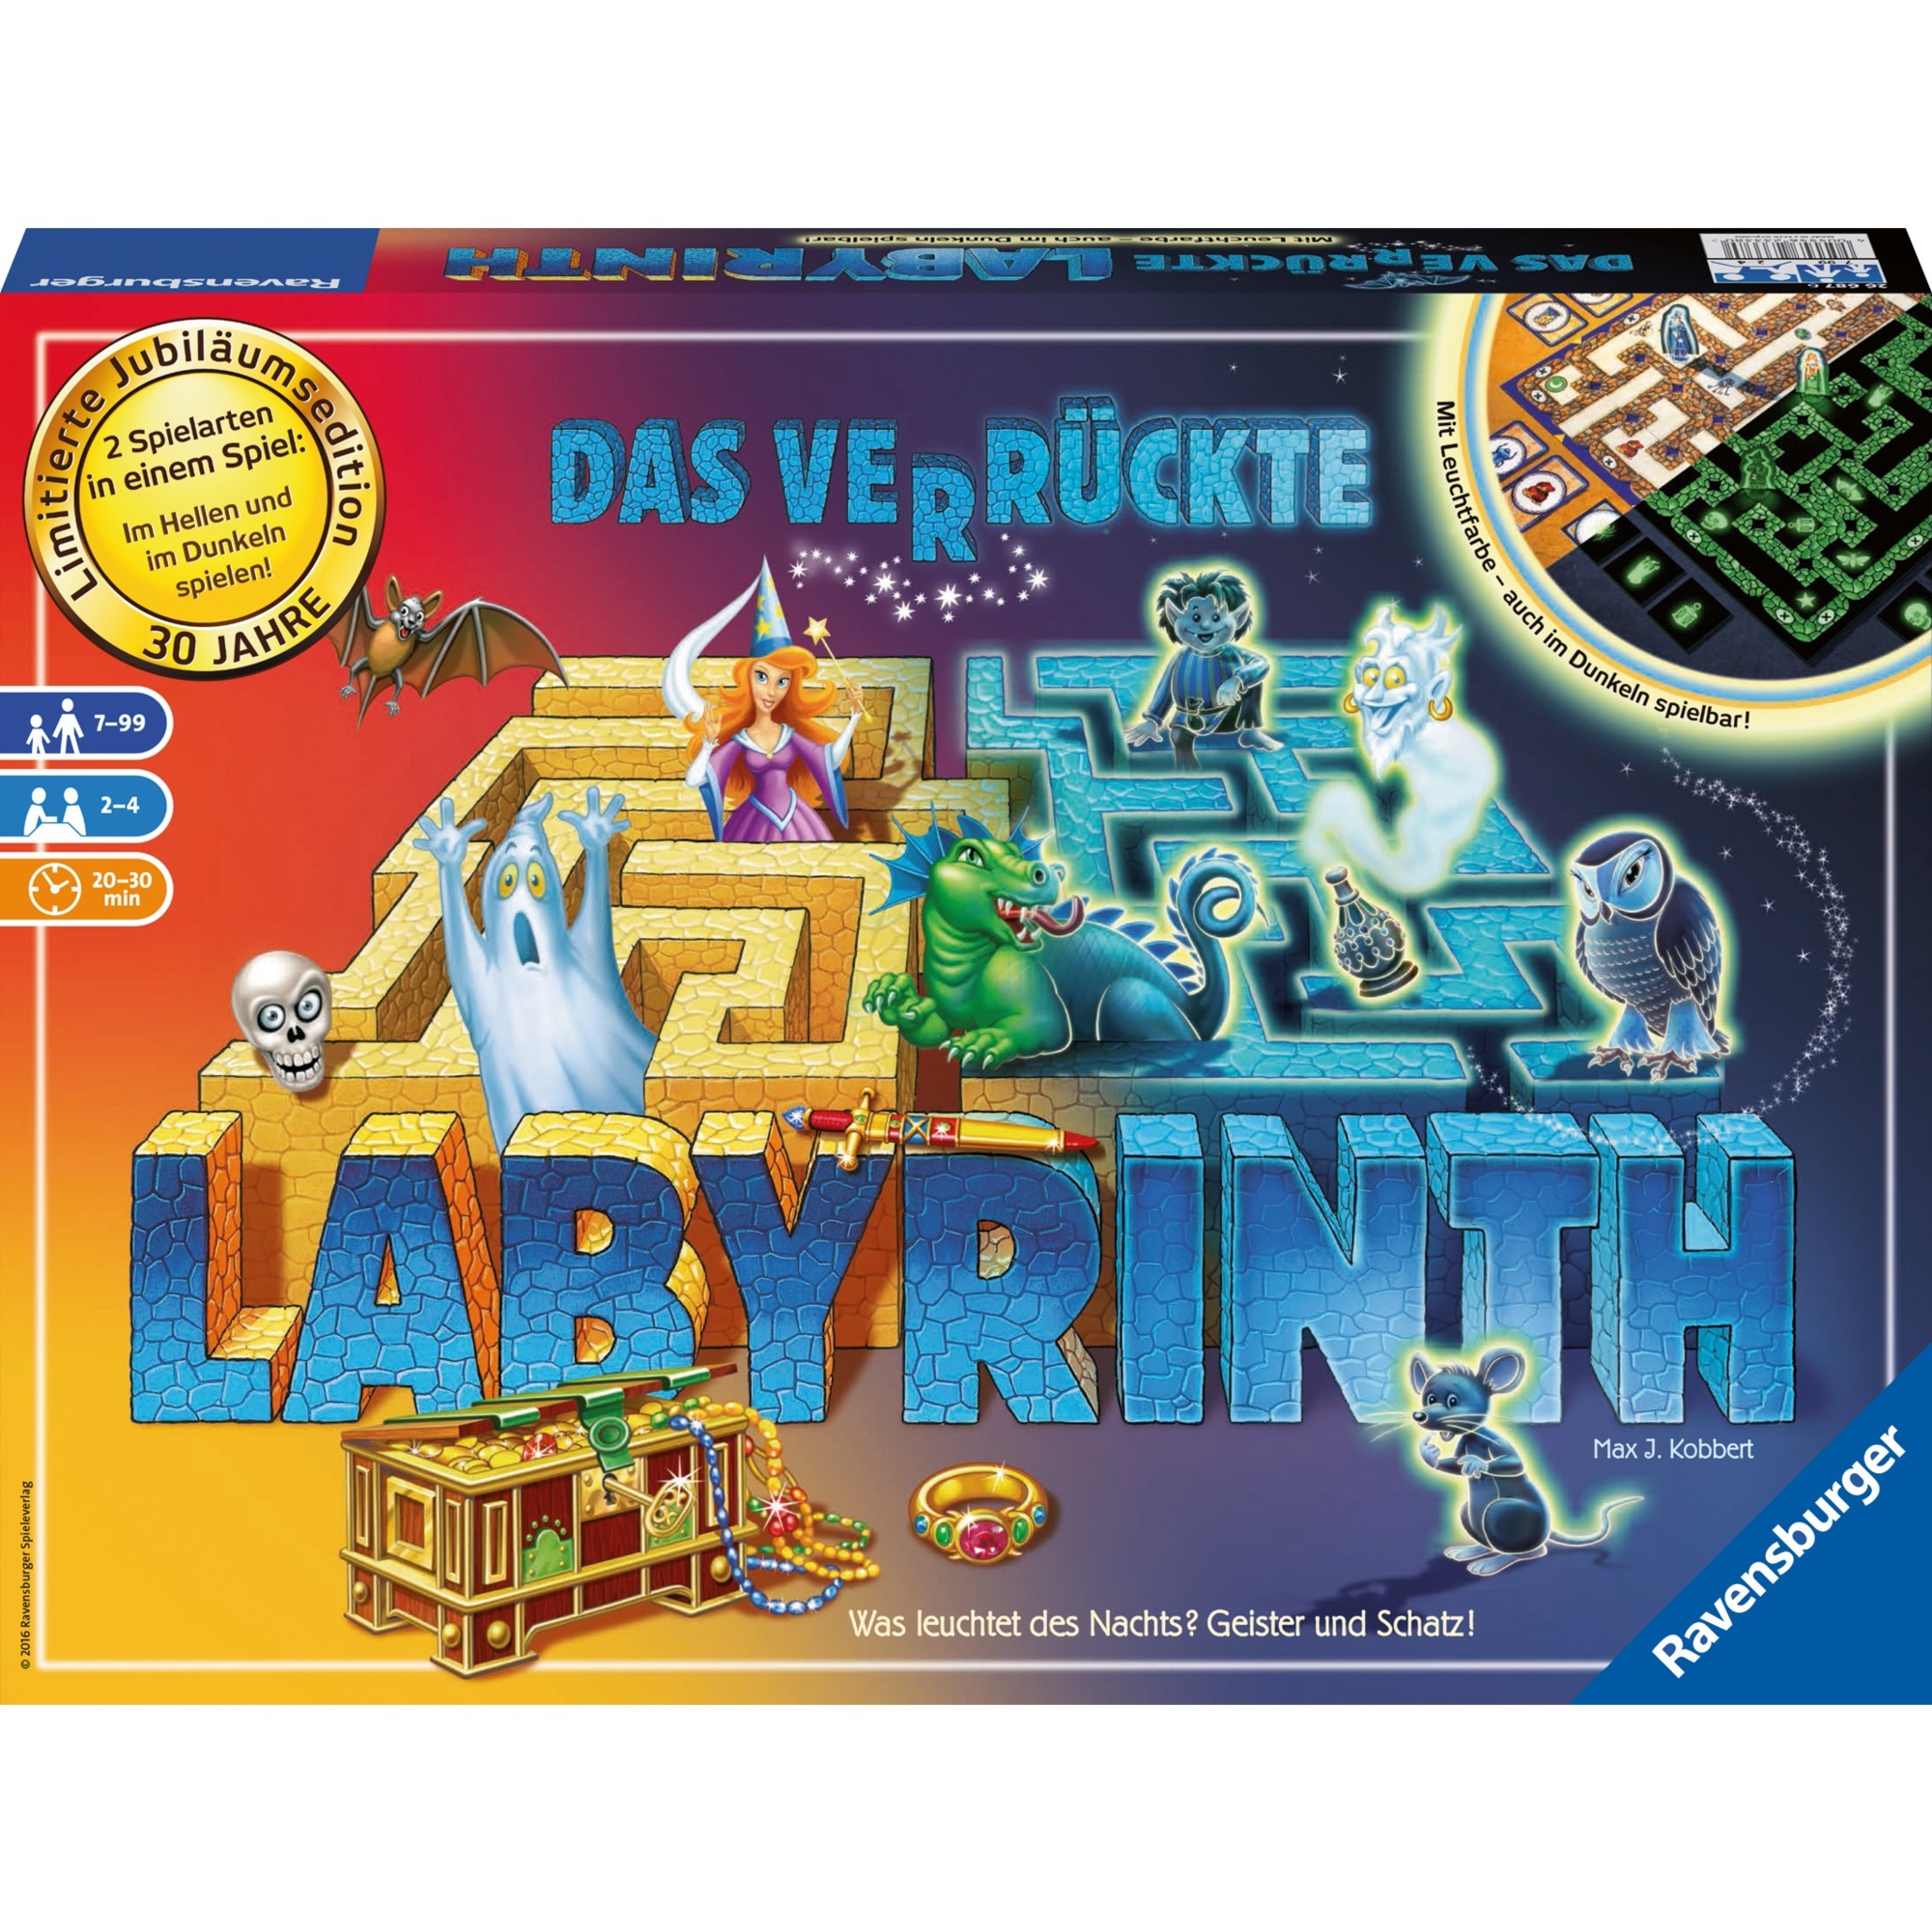 Ravensburger Spiel "Das verrückte Labyrinth - 30 Jahre Jubiliäumsedition"